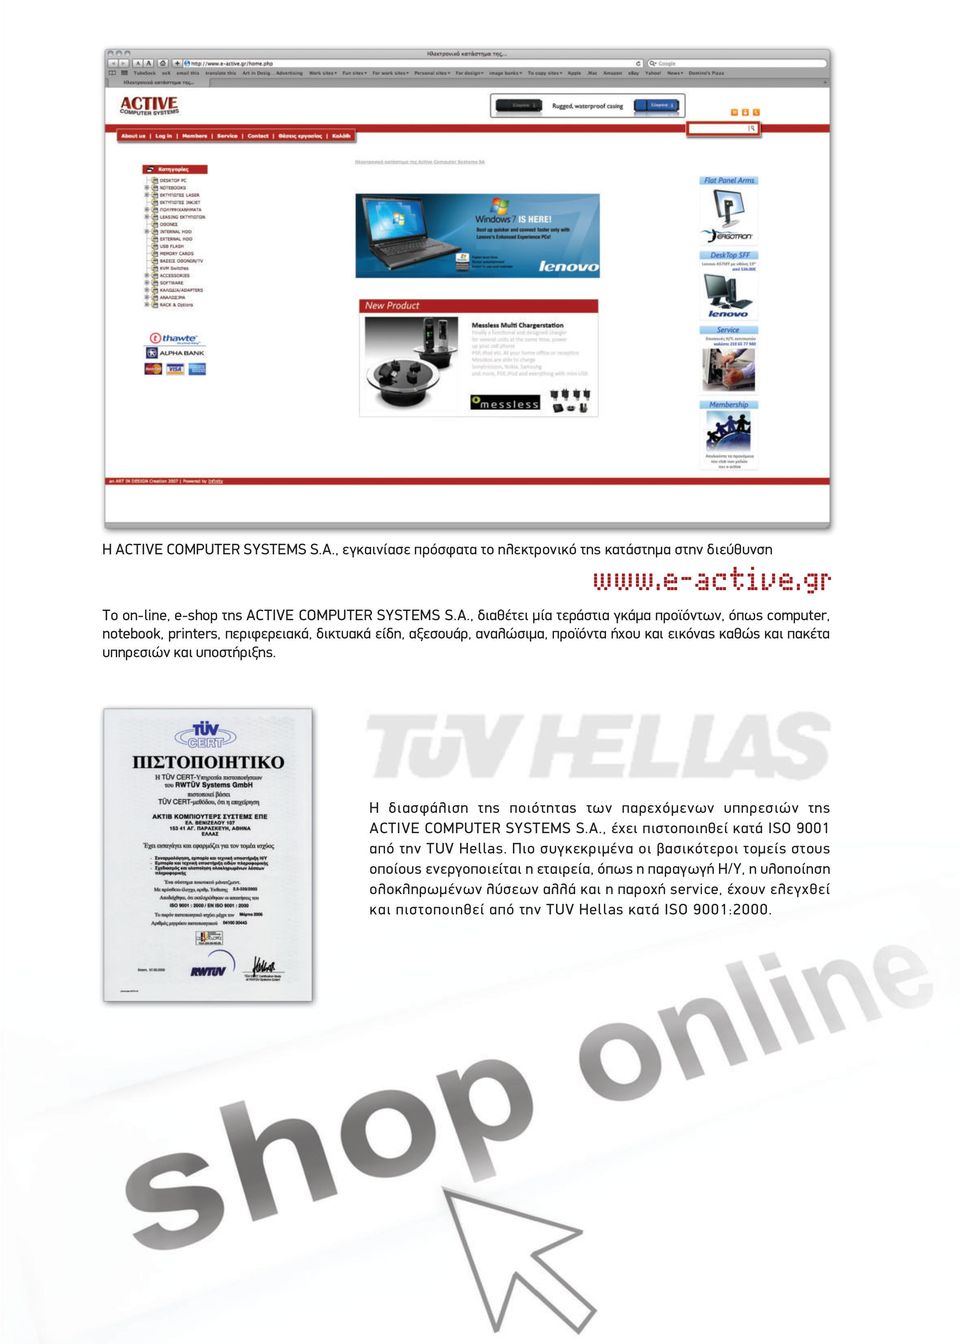 Η διασφάλιση της ποιότητας των παρεχόμενων υπηρεσιών της ACTIVE COMPUTER SYSTEMS S.A., έχει πιστοποιηθεί κατά ISO 9001 από την TUV Hellas.